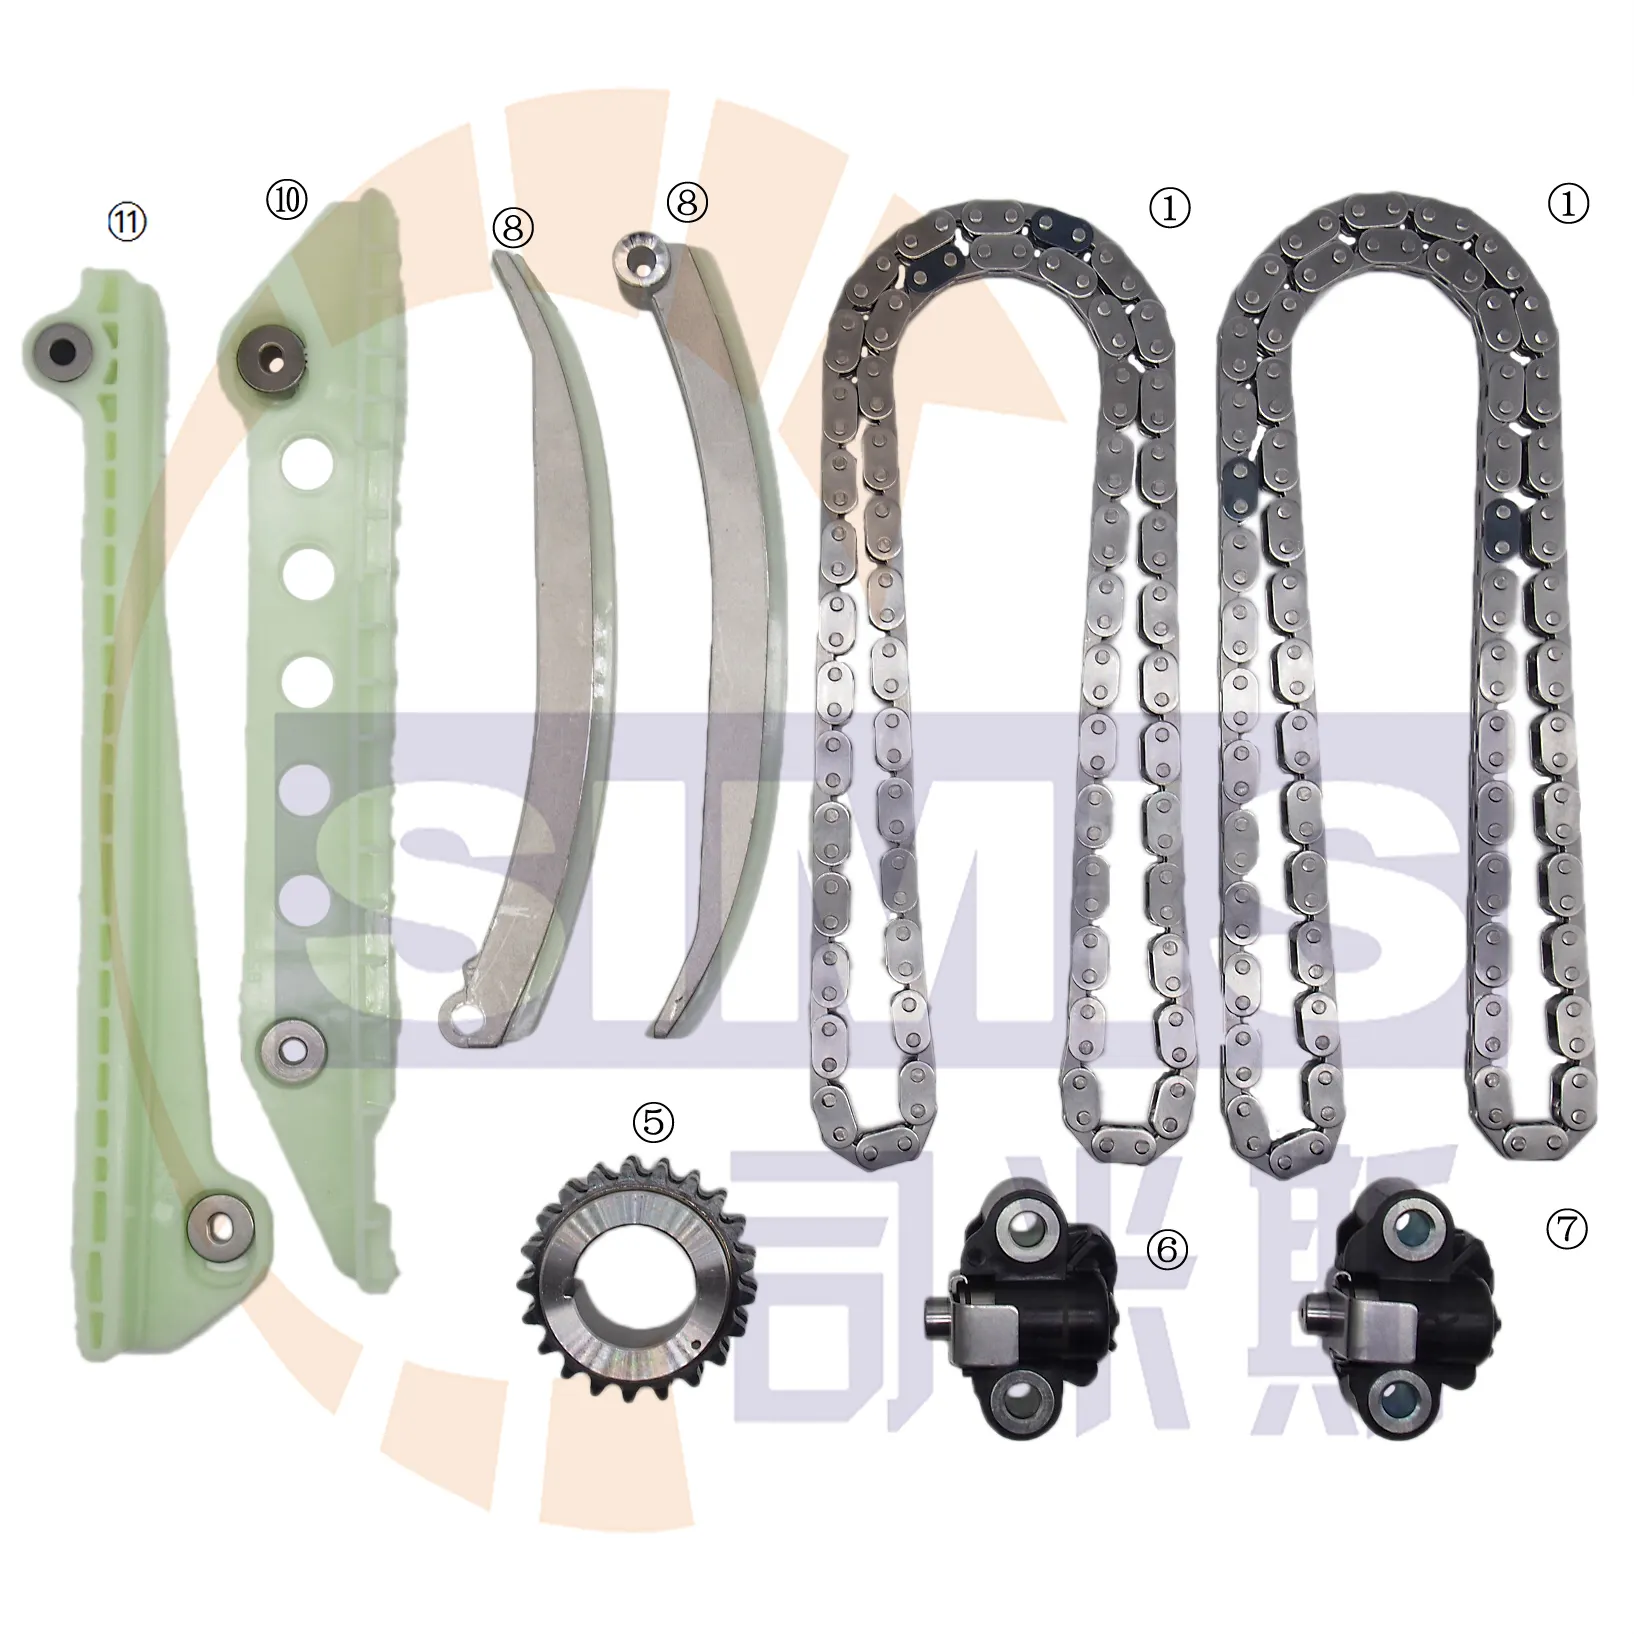 SIMIS PARTS Timing Chain Kit Digunakan untuk Ford Explorer Racing E150 F150 Lincoln Mercury 4.6L